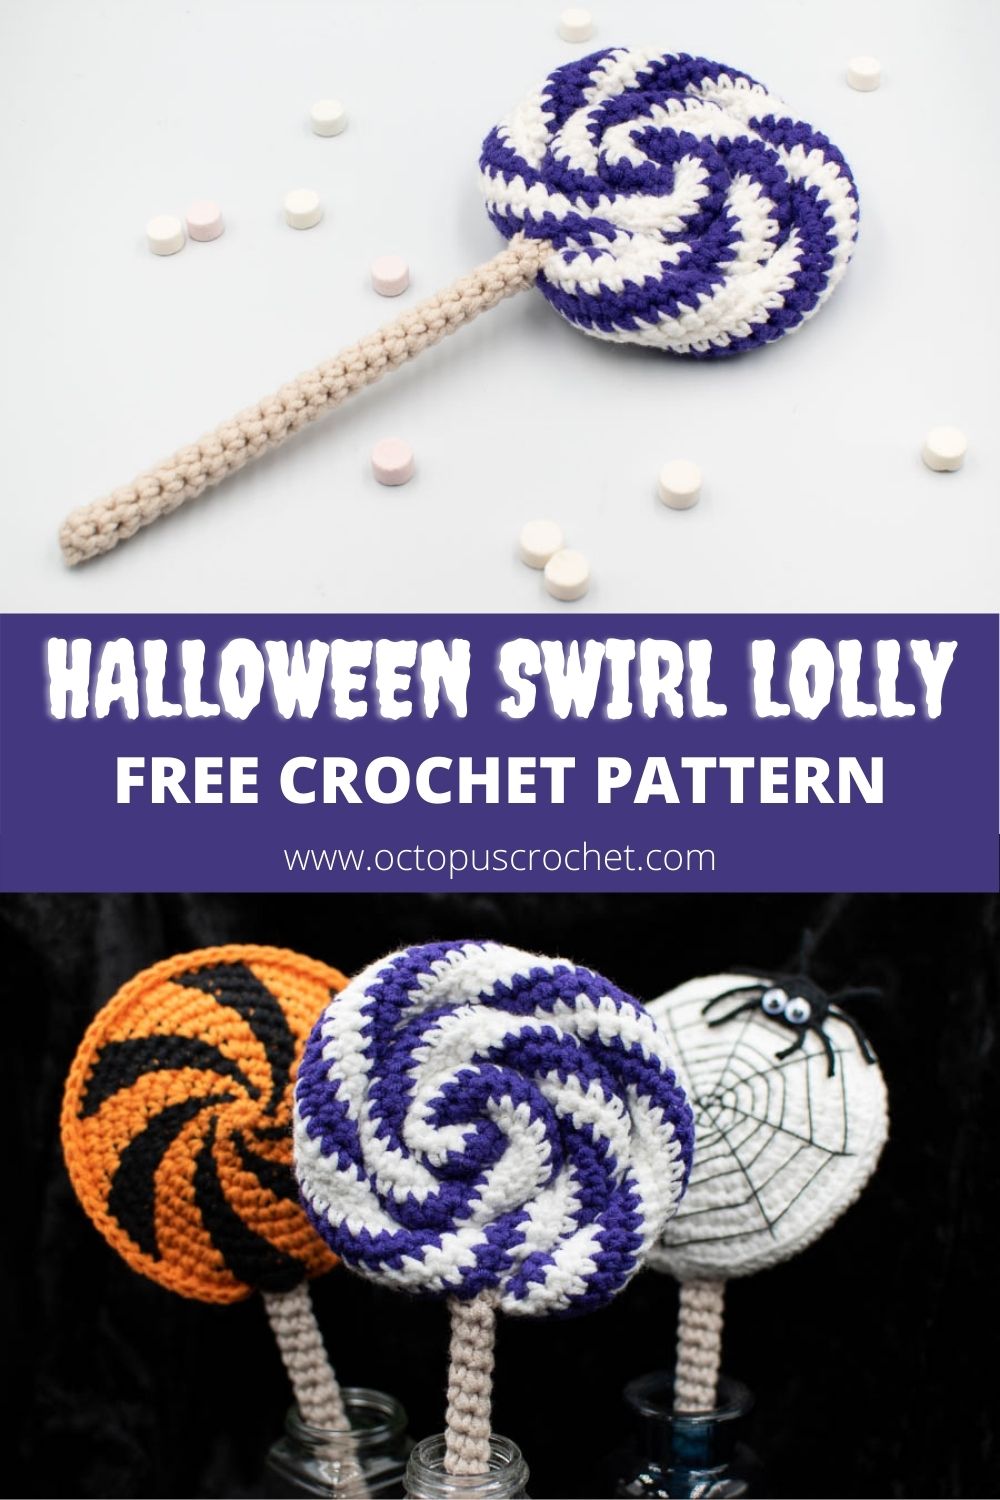 Halloween Swirl Lolly free crochet pattern